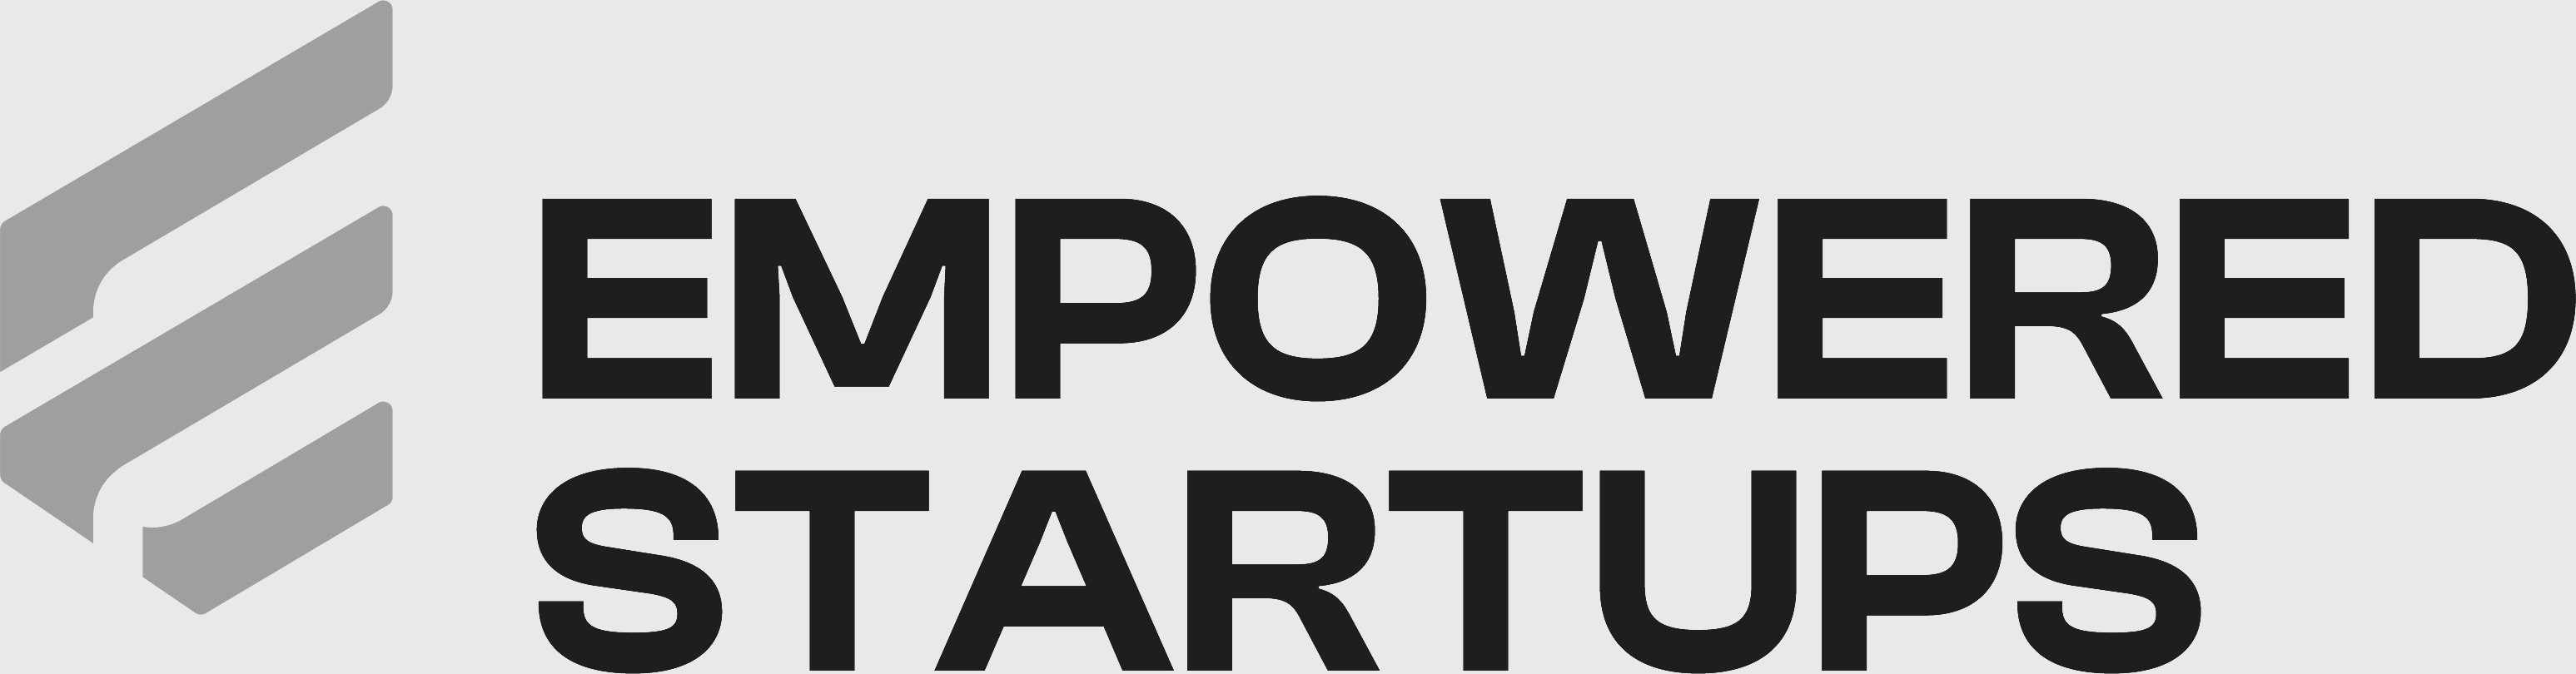 Empowered Startups logo